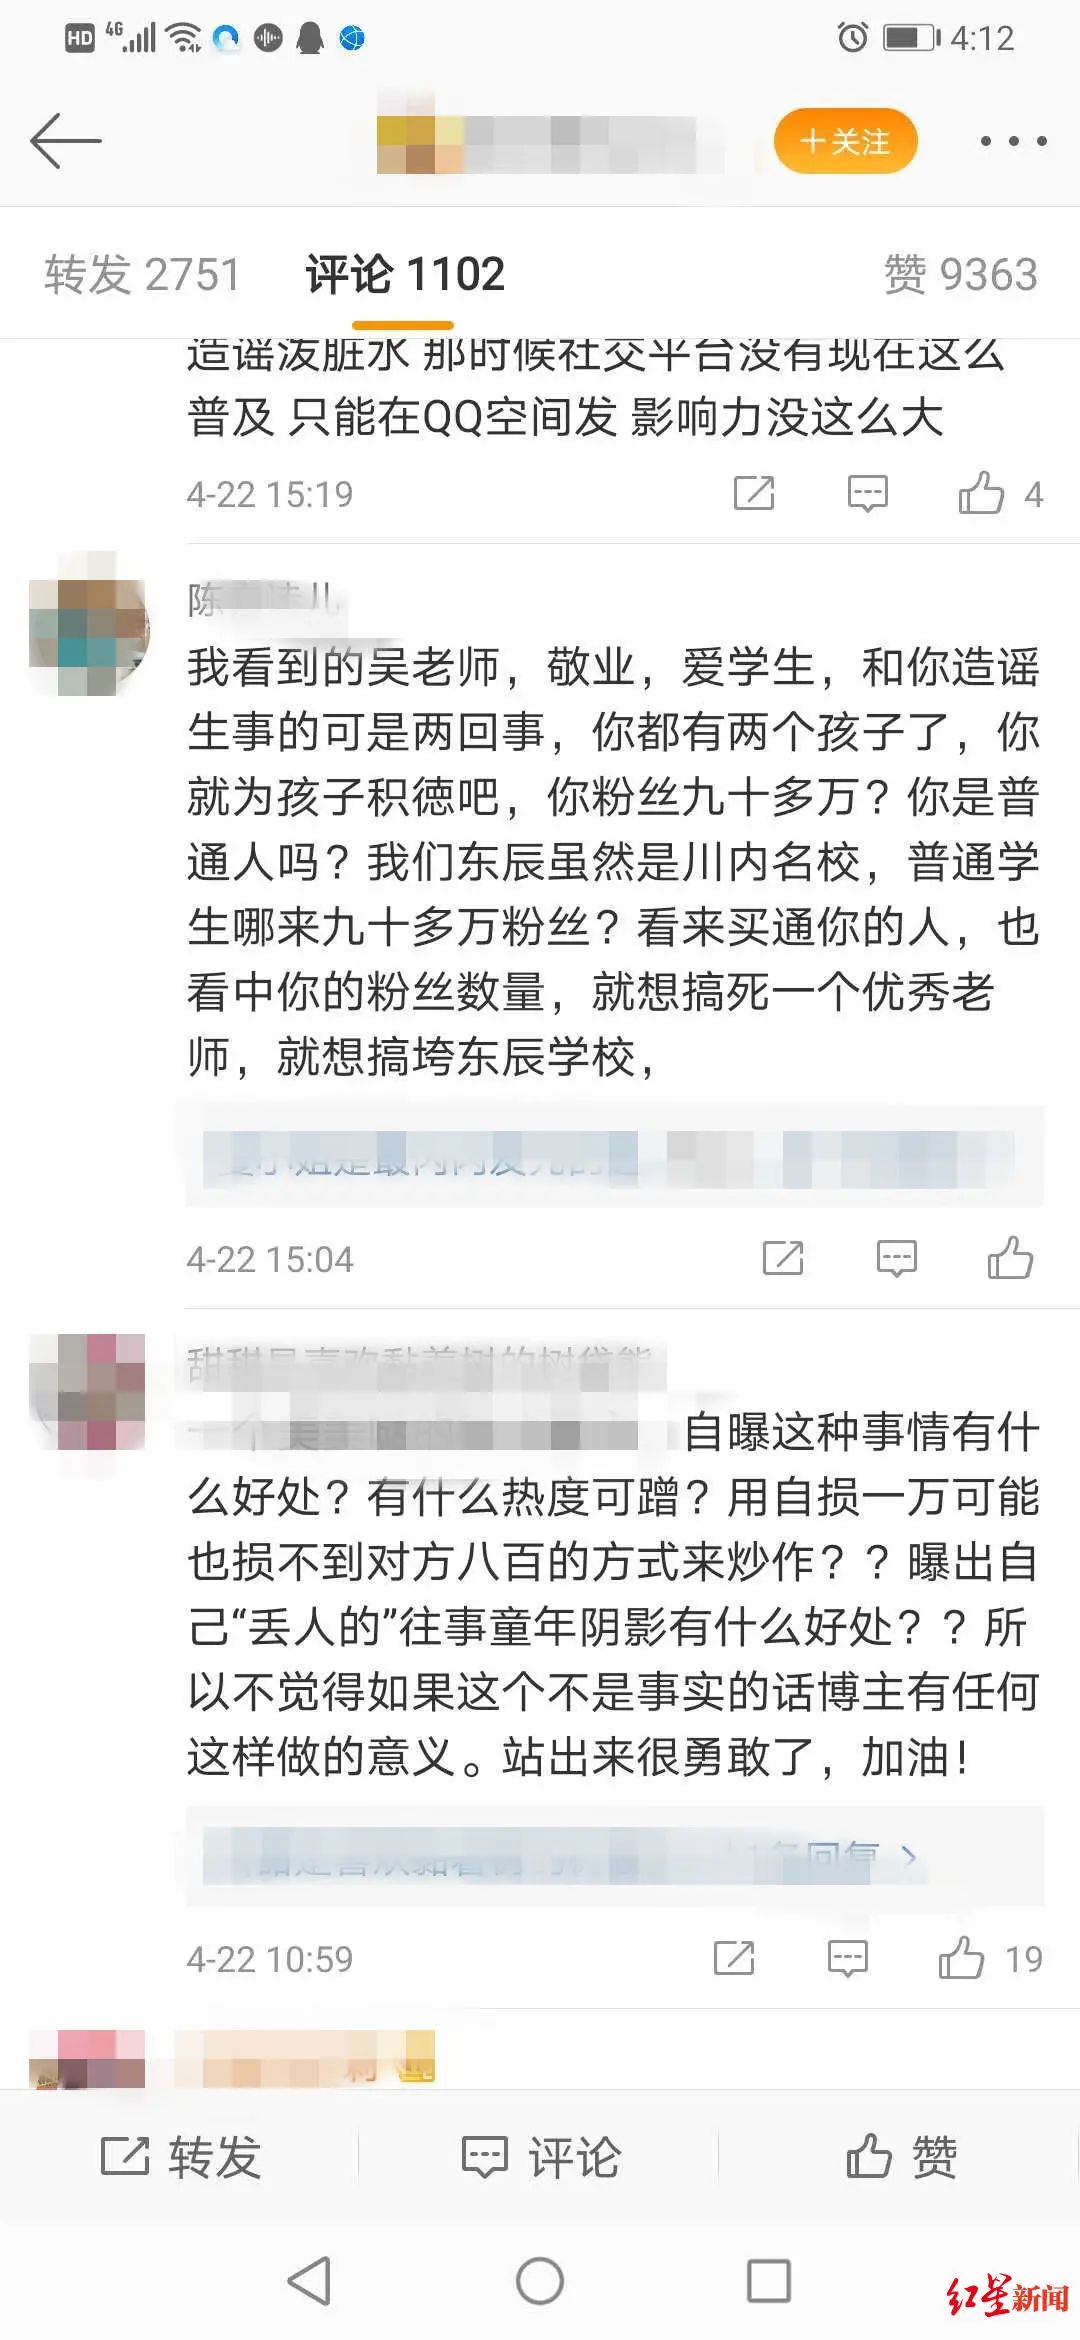  “我看到的吴老师，敬业，爱学生，和你造谣生事的可是两回事……”一名网友在微博上回复。